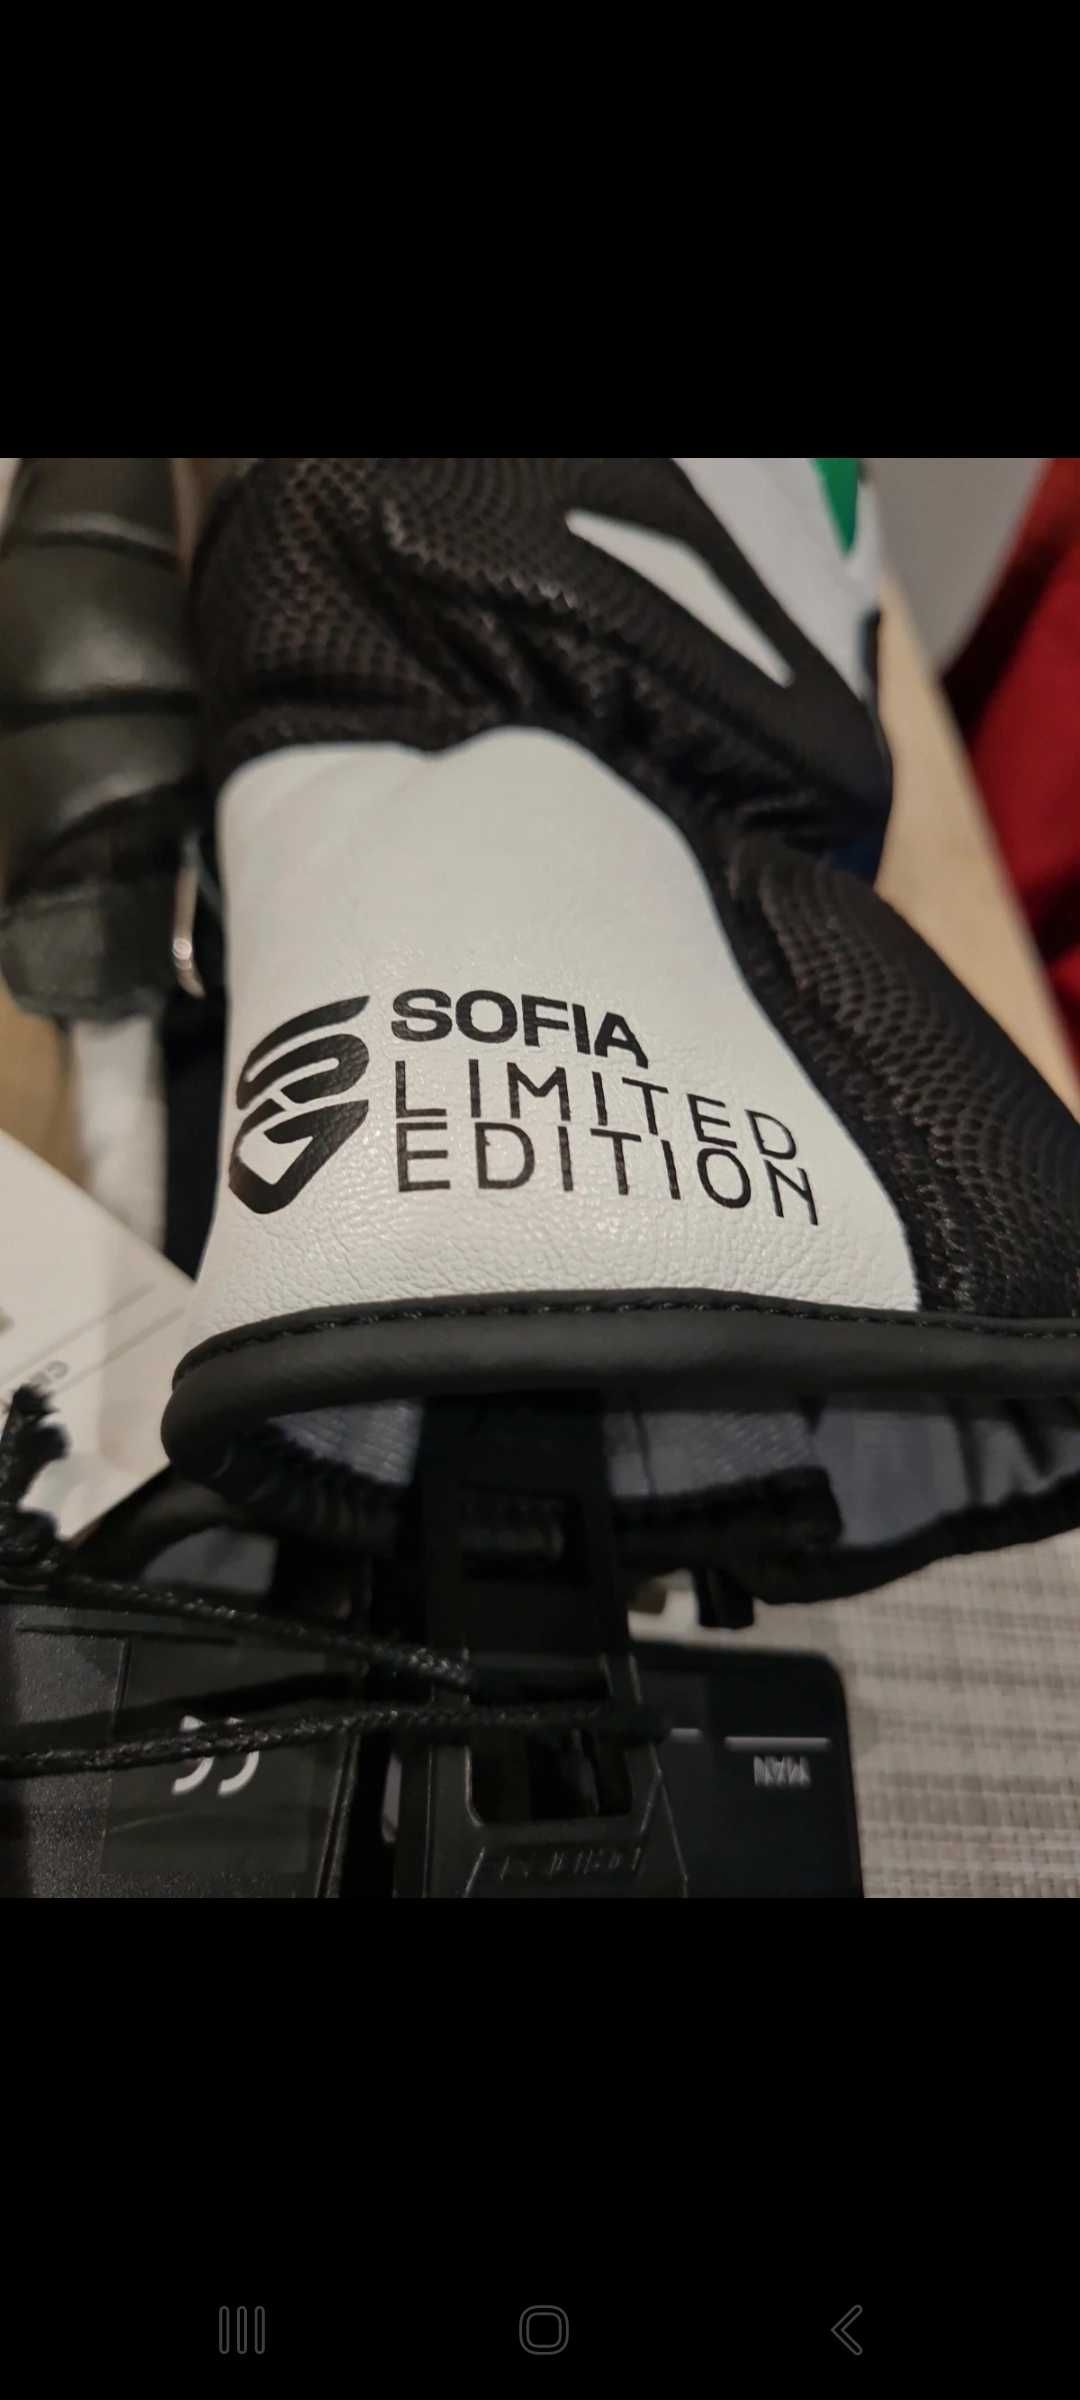 Rękawice Narciarskie Sofia Goggia Limited Edition nówki z metką "L"